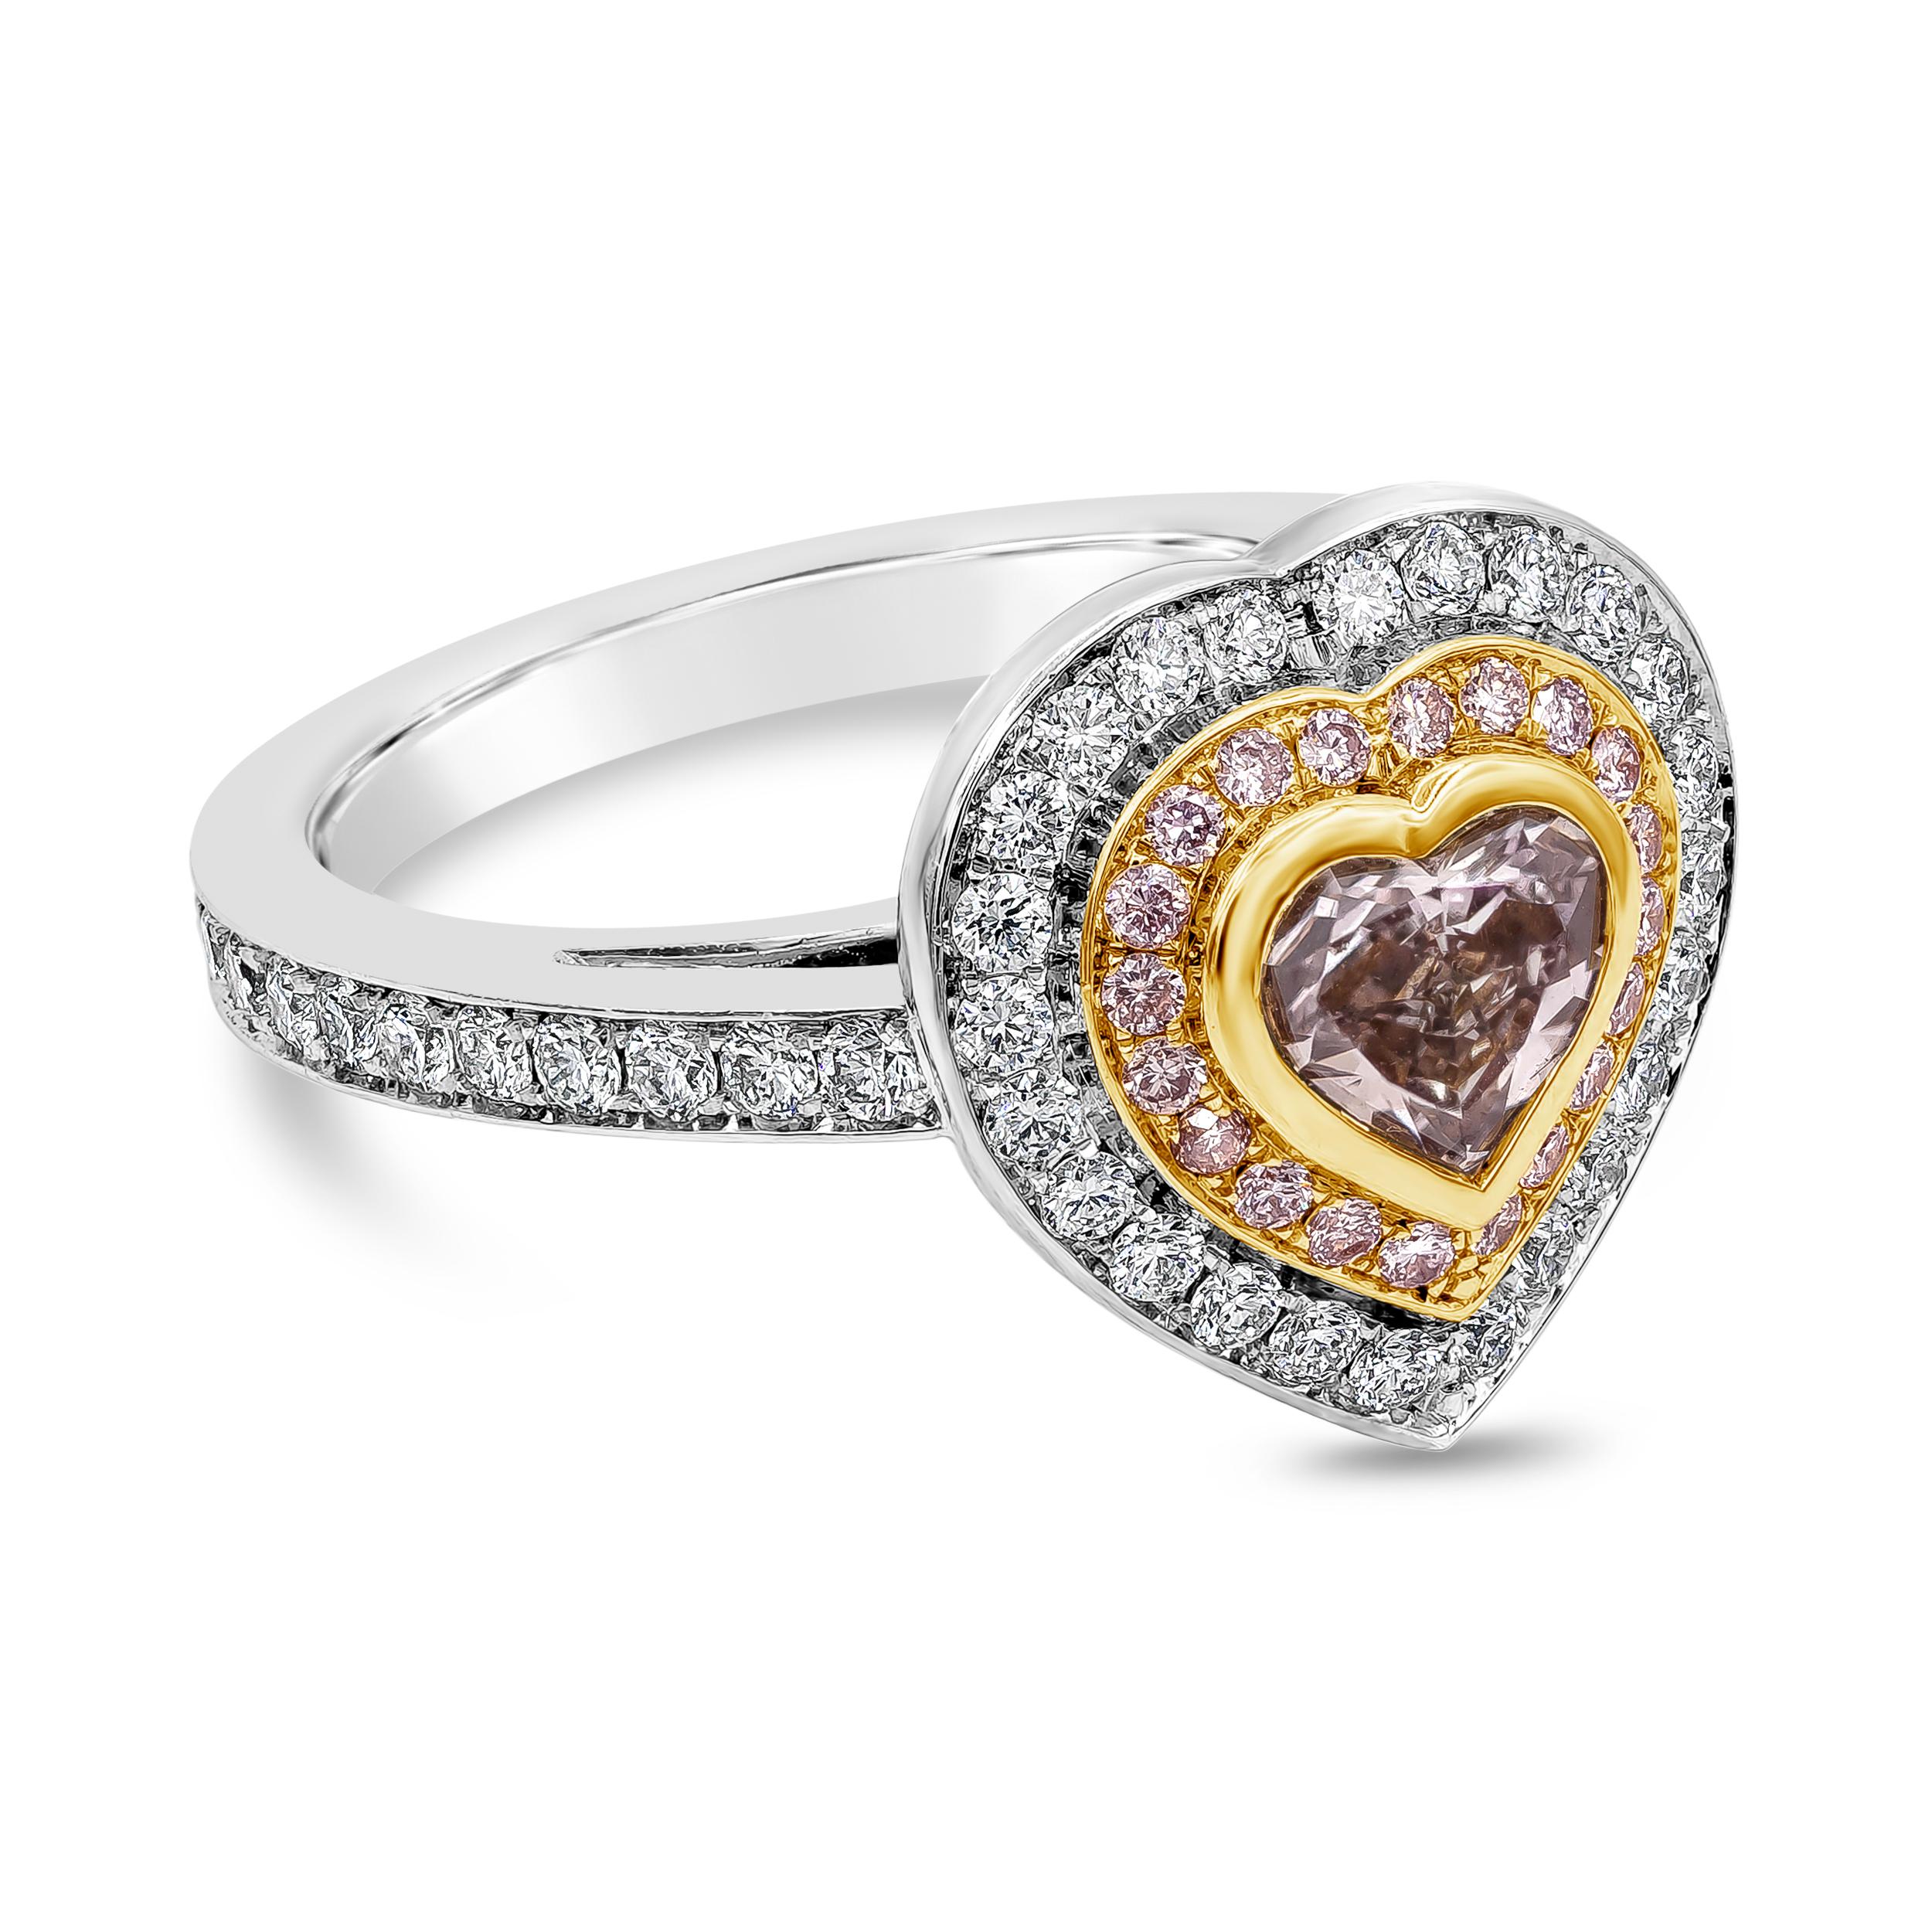 Le diamant en forme de cœur de 0,75 carats est certifié par le GIA comme étant de couleur rose brunâtre et de pureté SI2. Le diamant central est entouré de deux rangées de diamants ronds et brillants. Rangée intérieure de diamants roses pesant 0,12